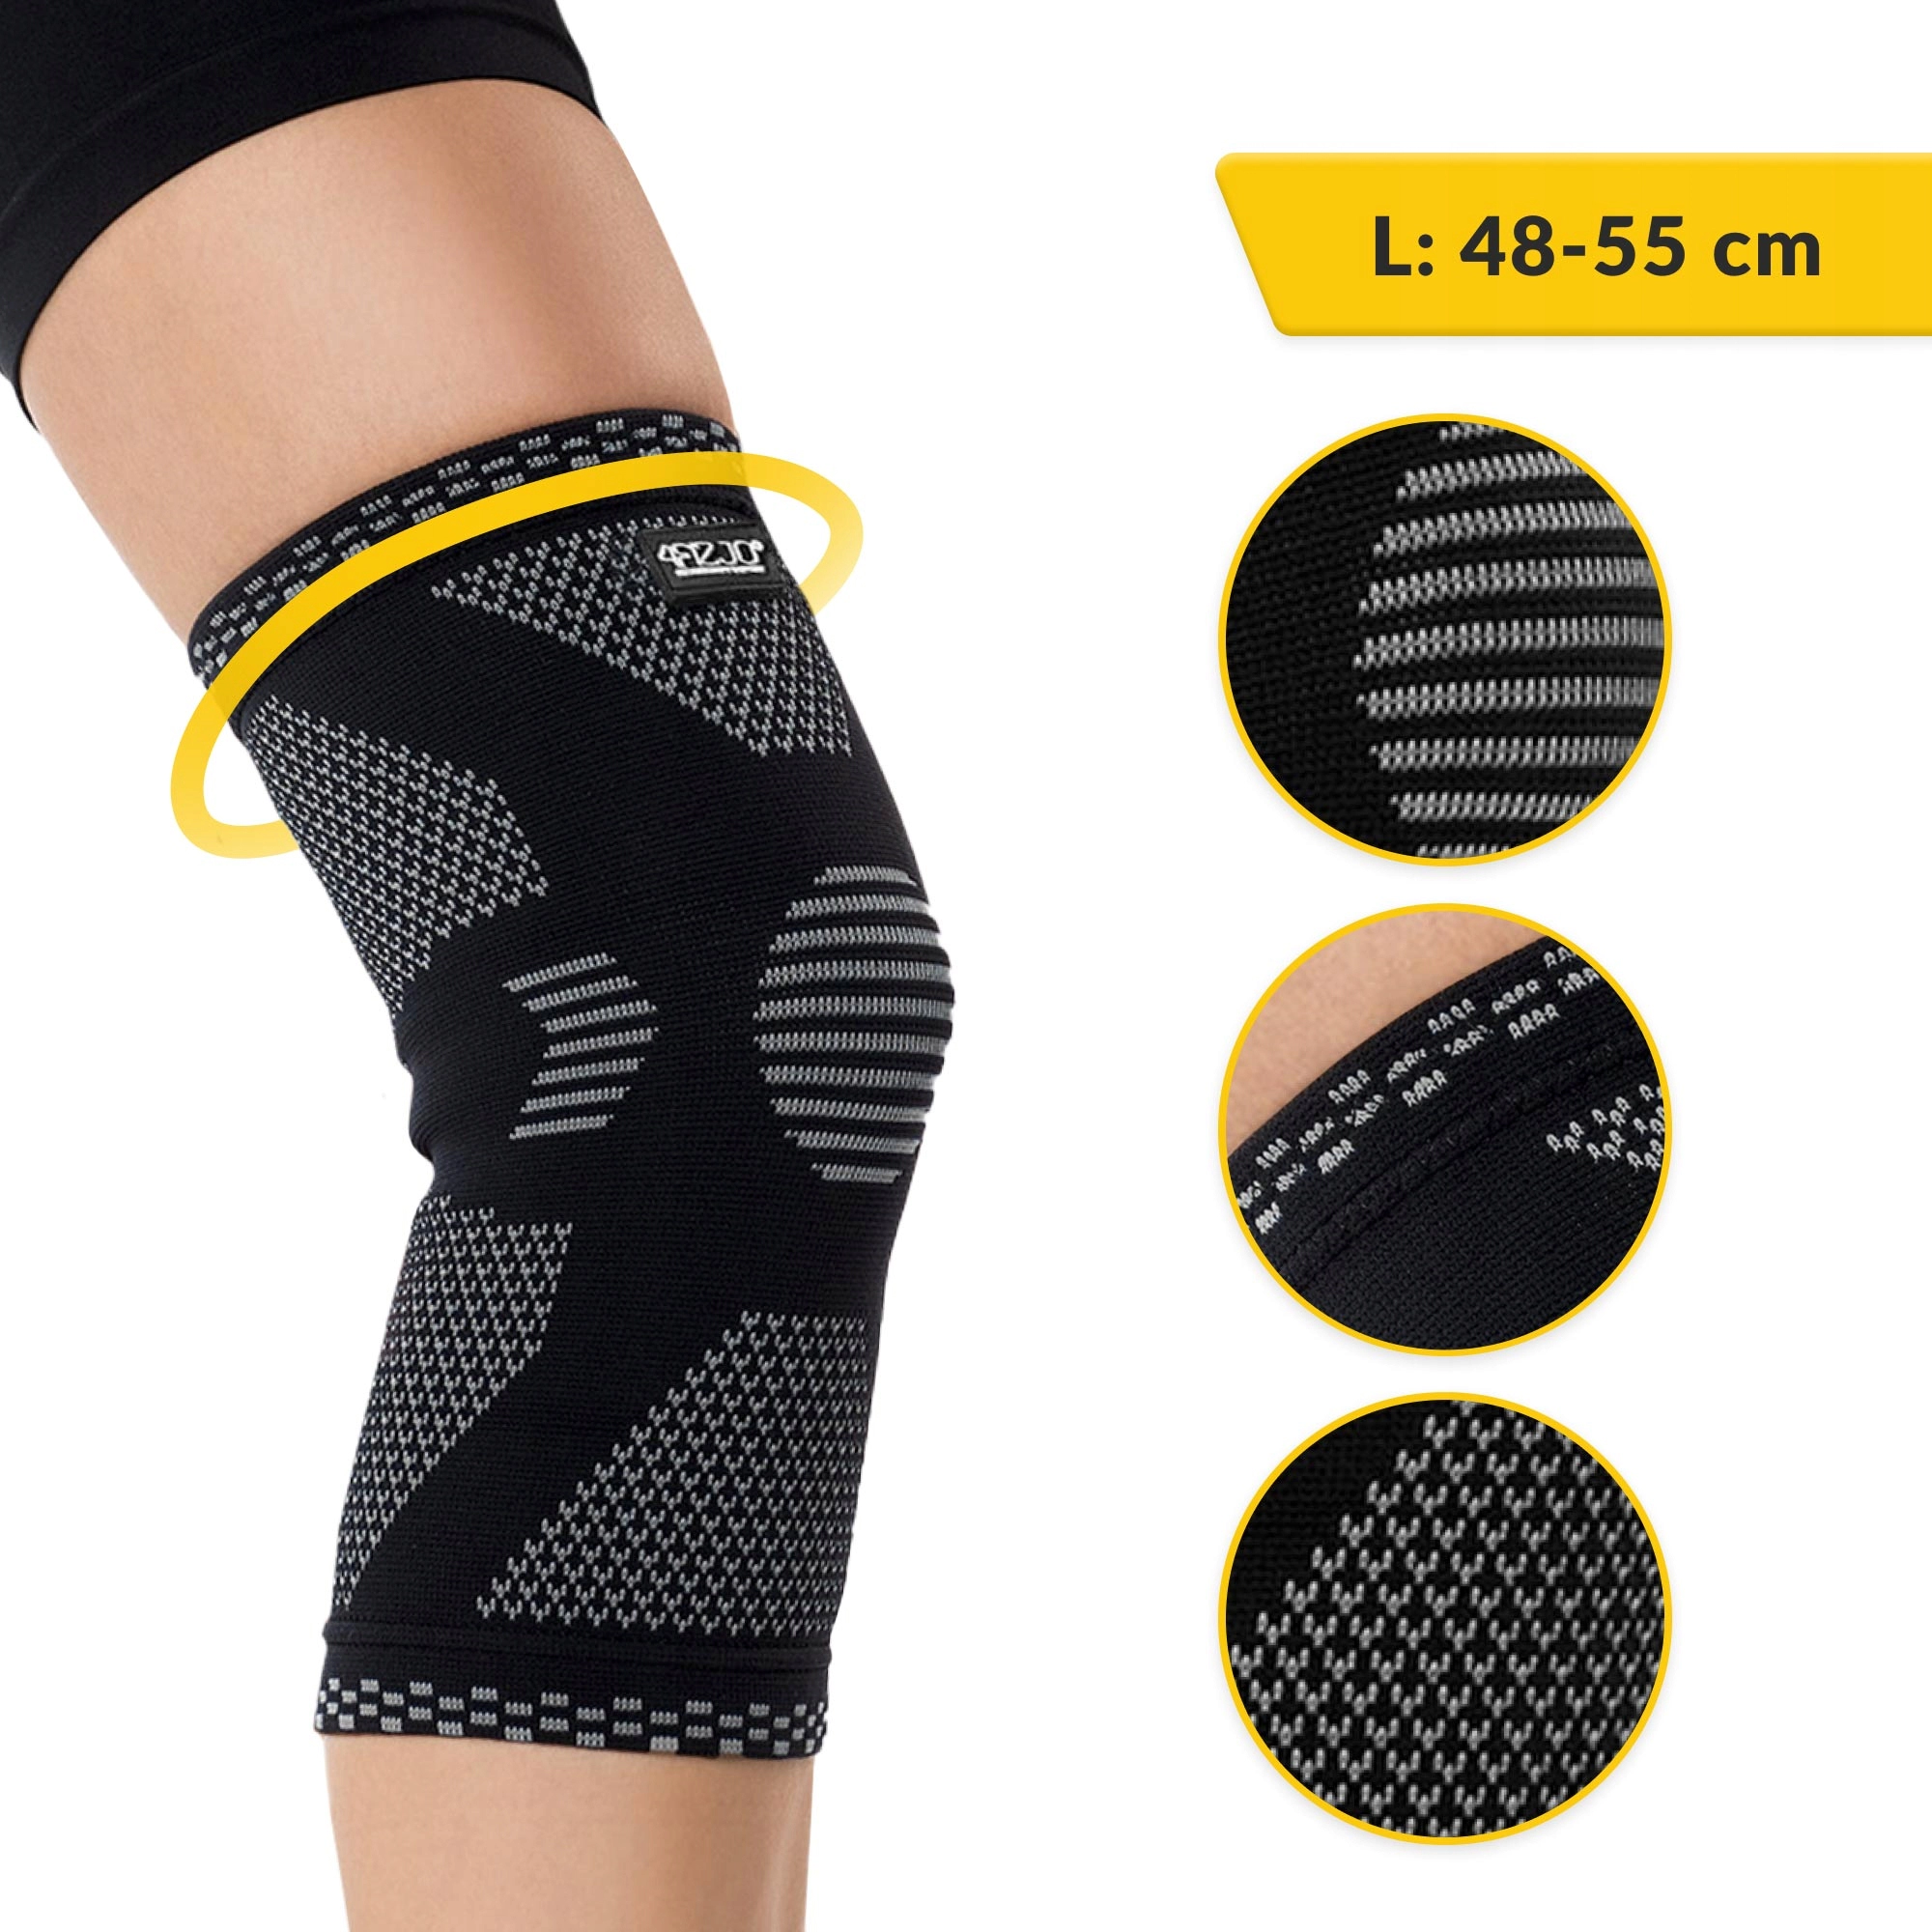 orteza na kolano stabilizator kolana elastyczna opaska